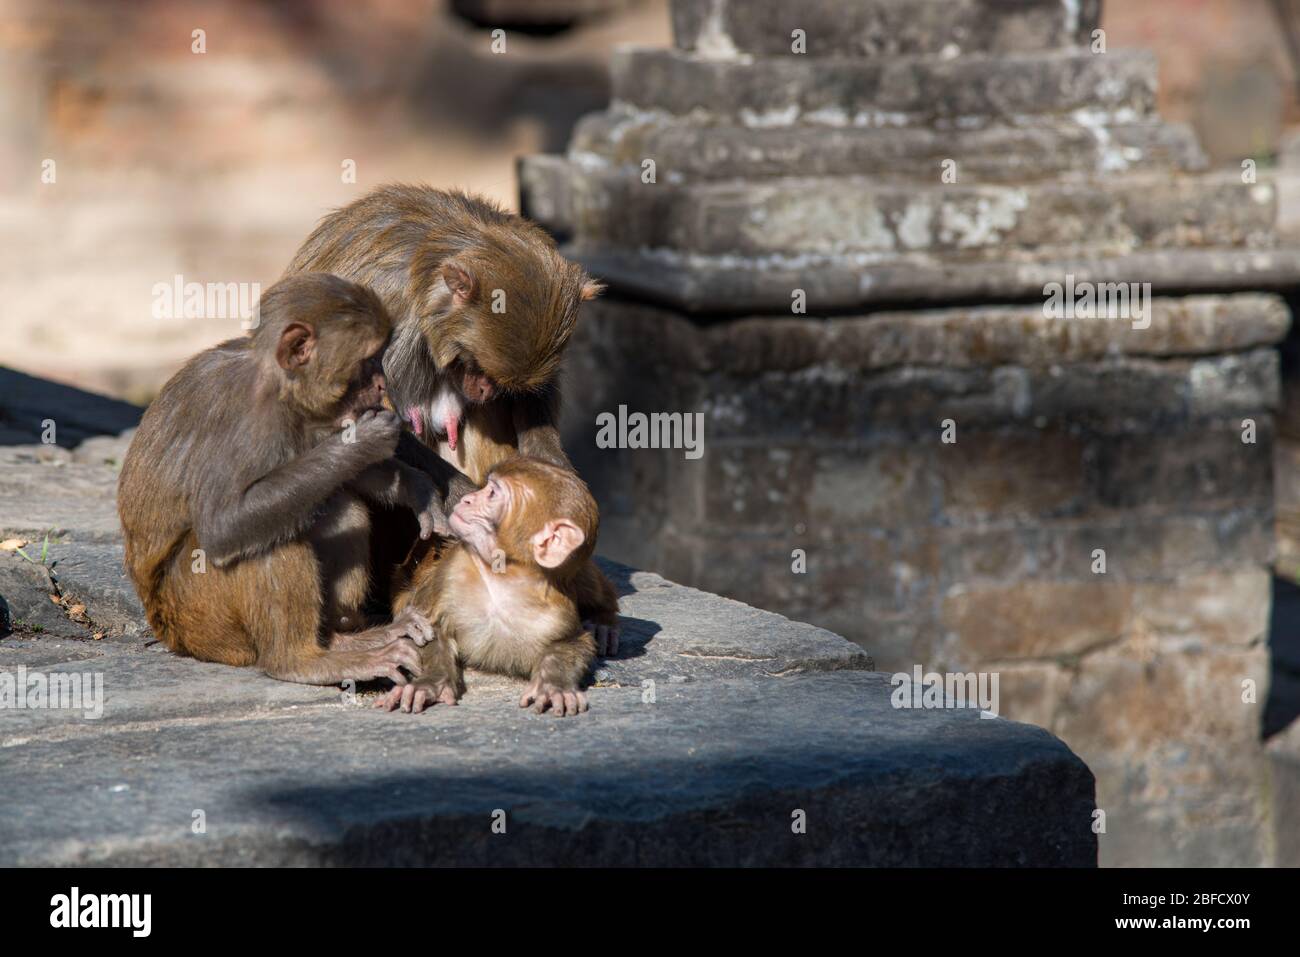 Famille des singes tenant un bébé dans un temple sacré au Népal Banque D'Images